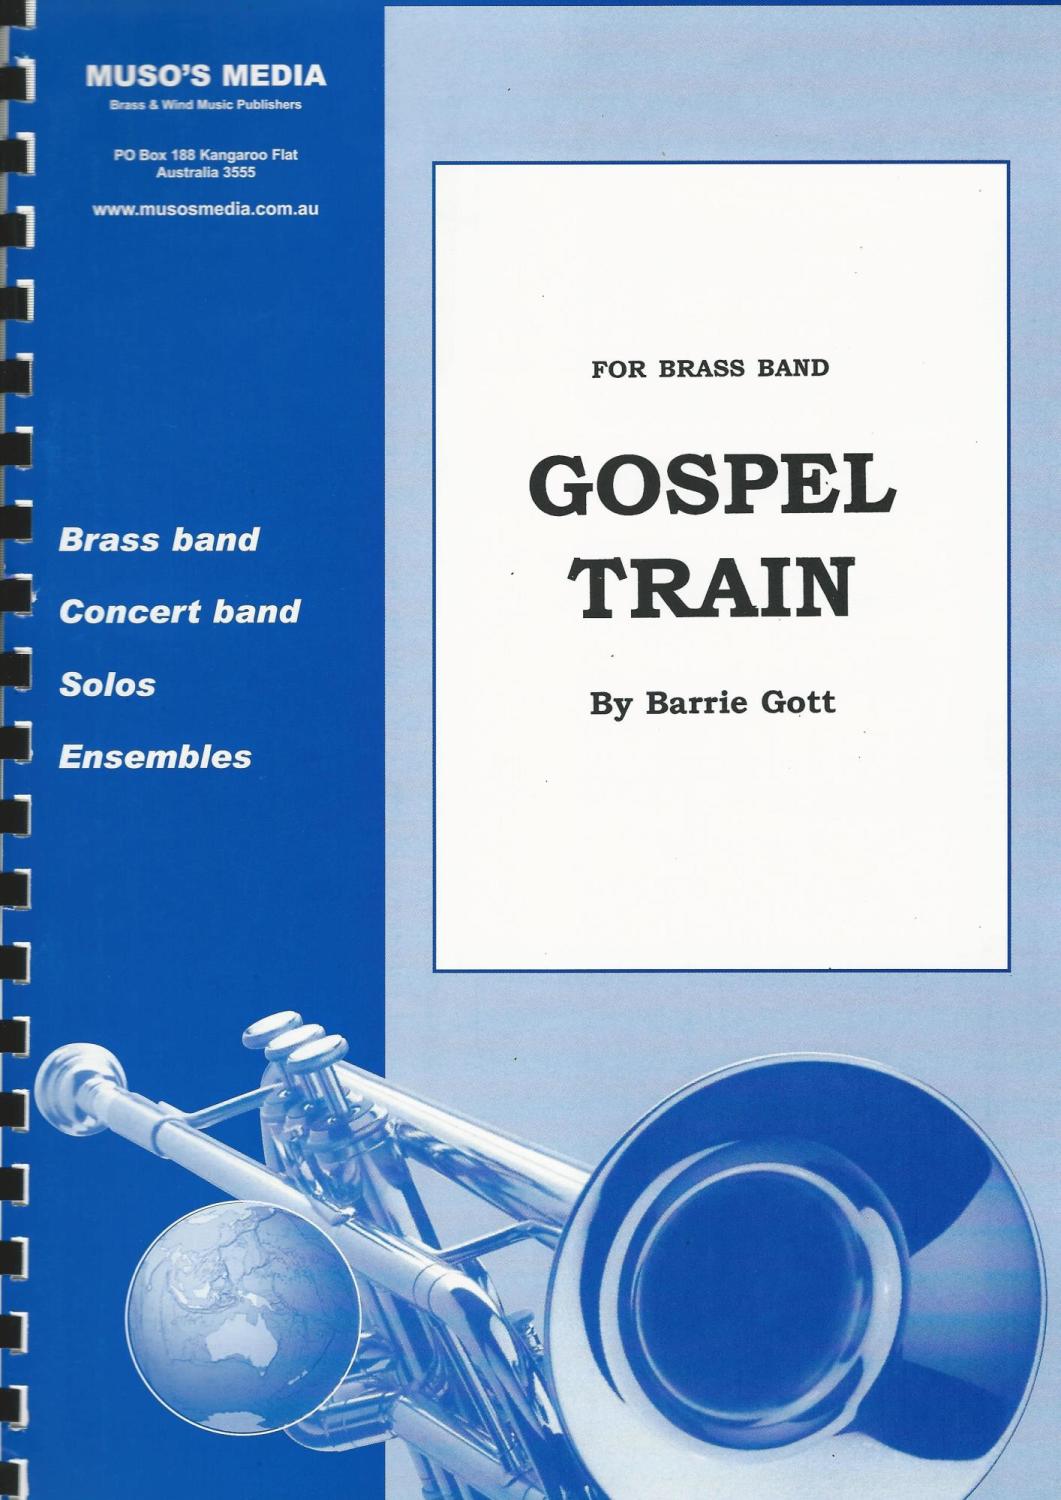 Gospel Train for Brass Band - Barrie Gott